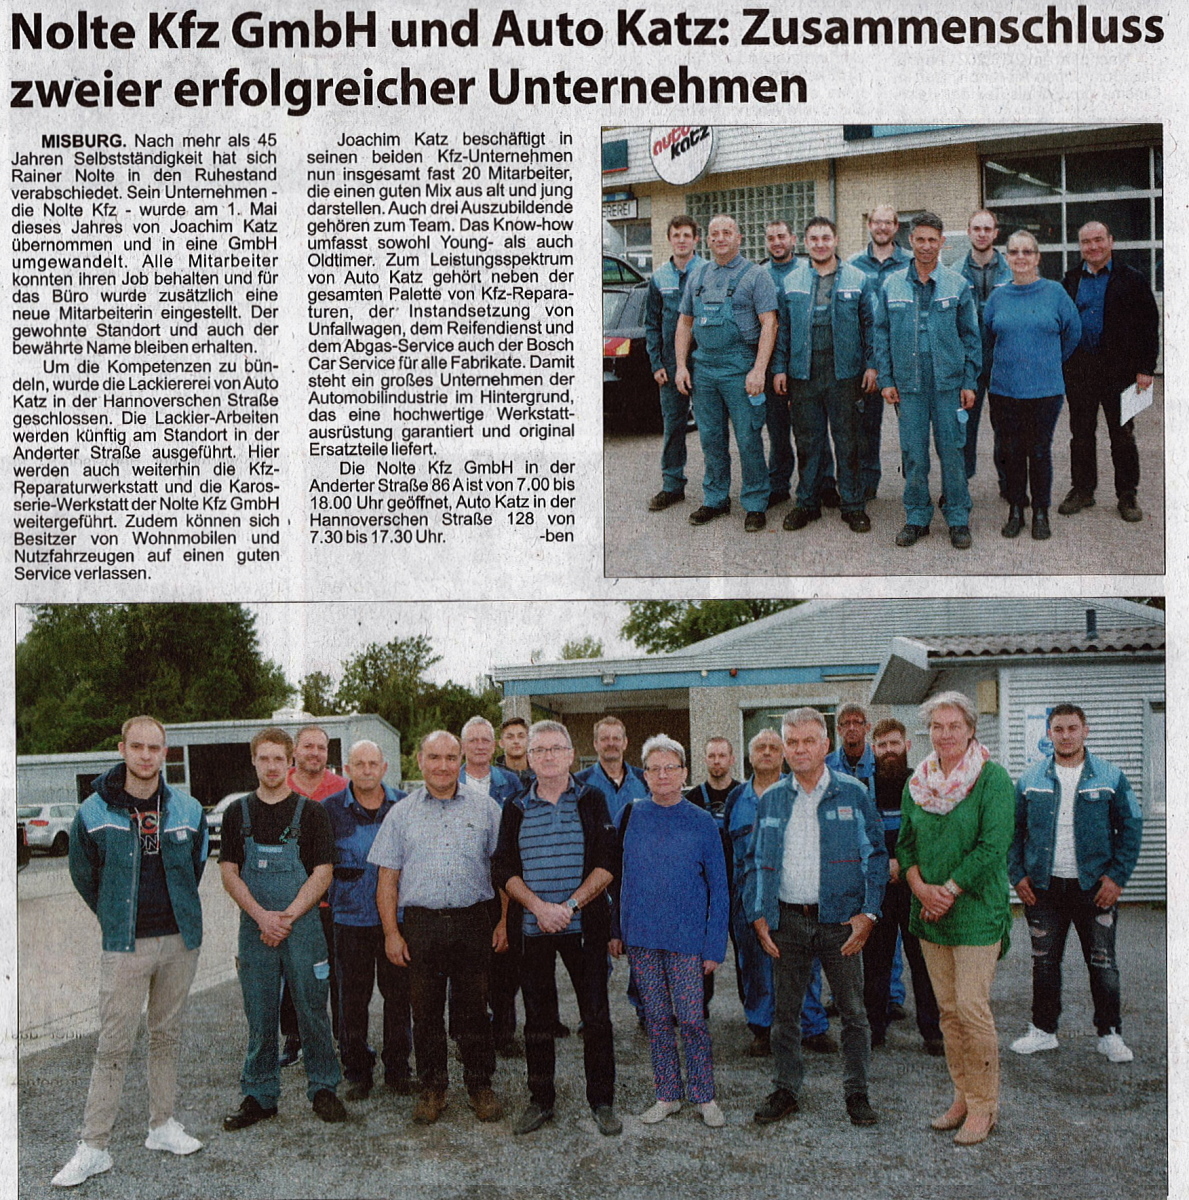 Nolte Kfz GmbH